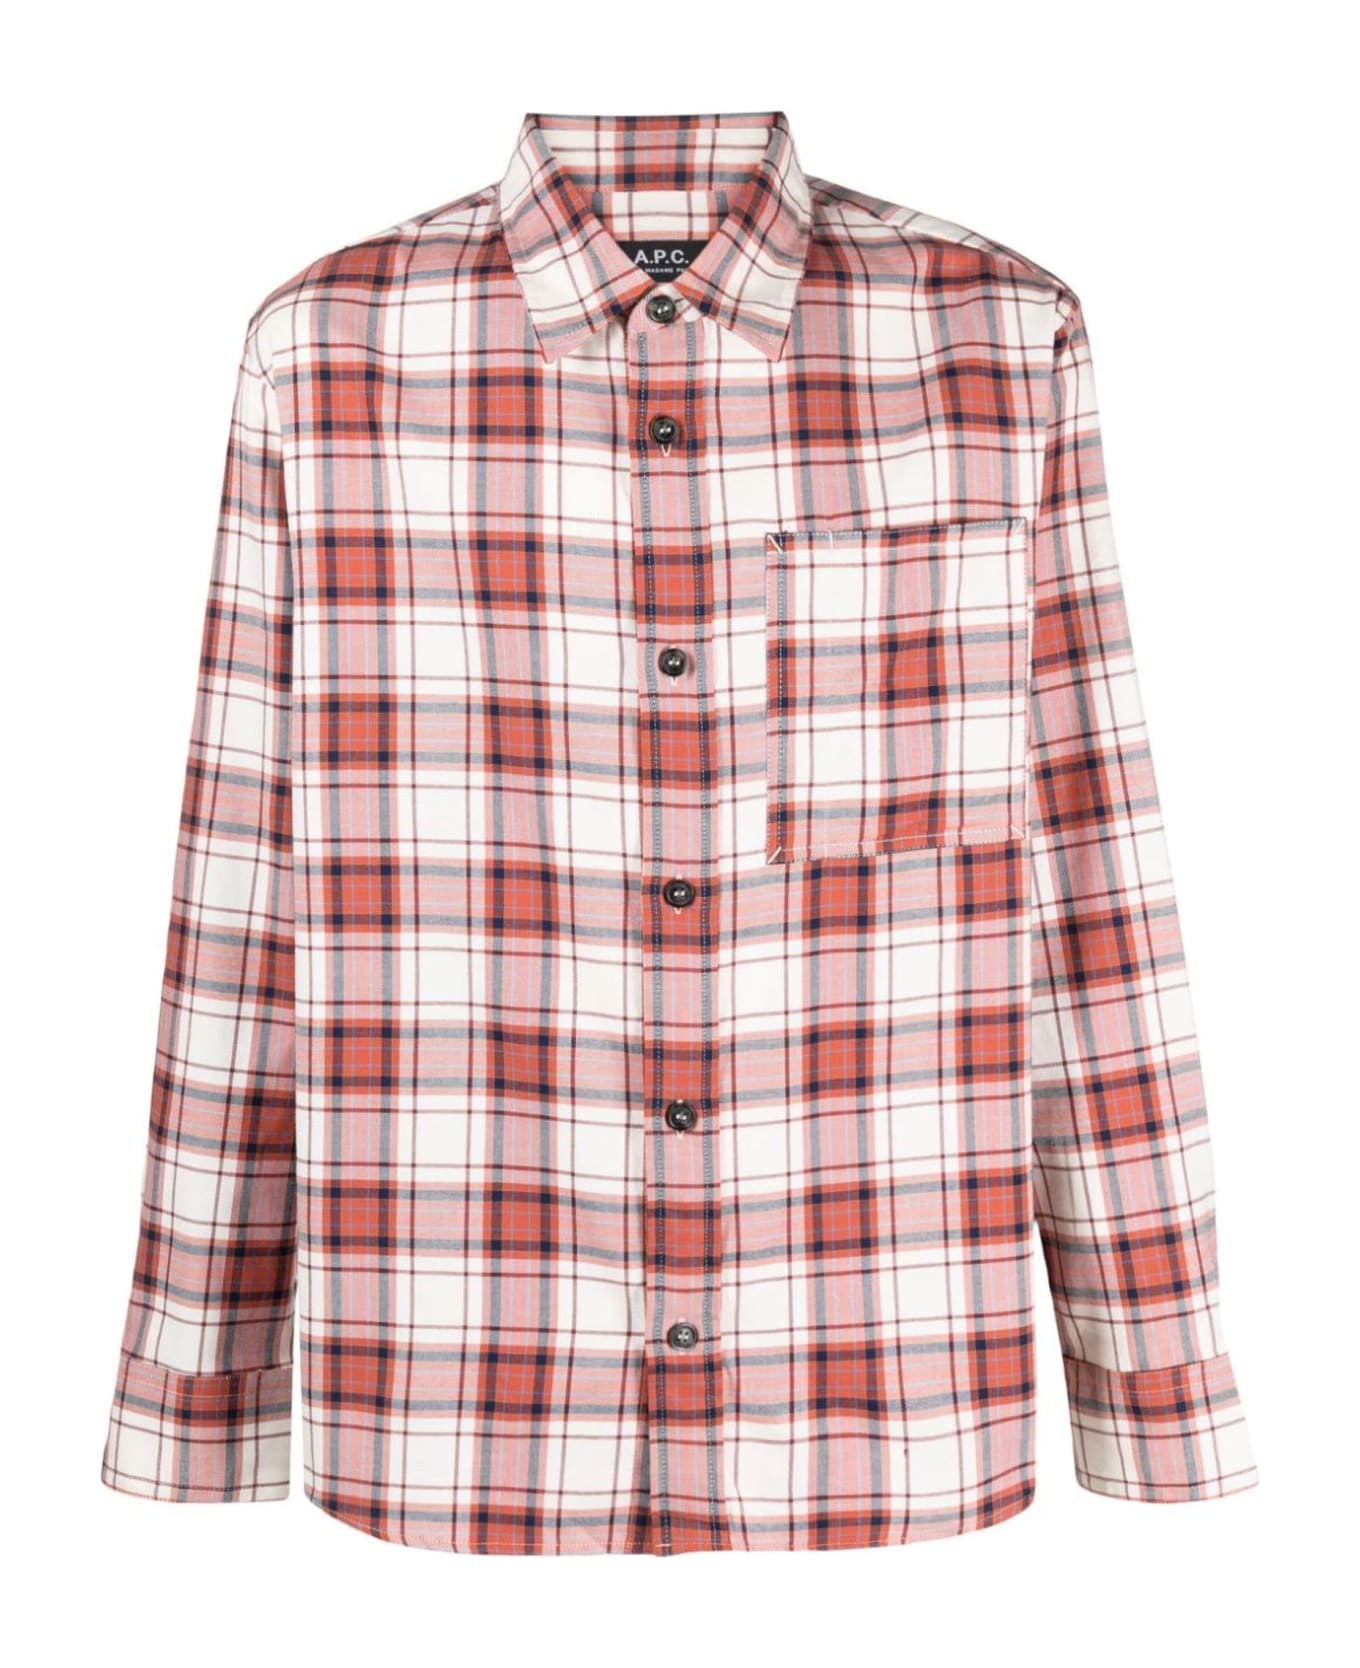 A.P.C. Cotton Shirt - Rosso